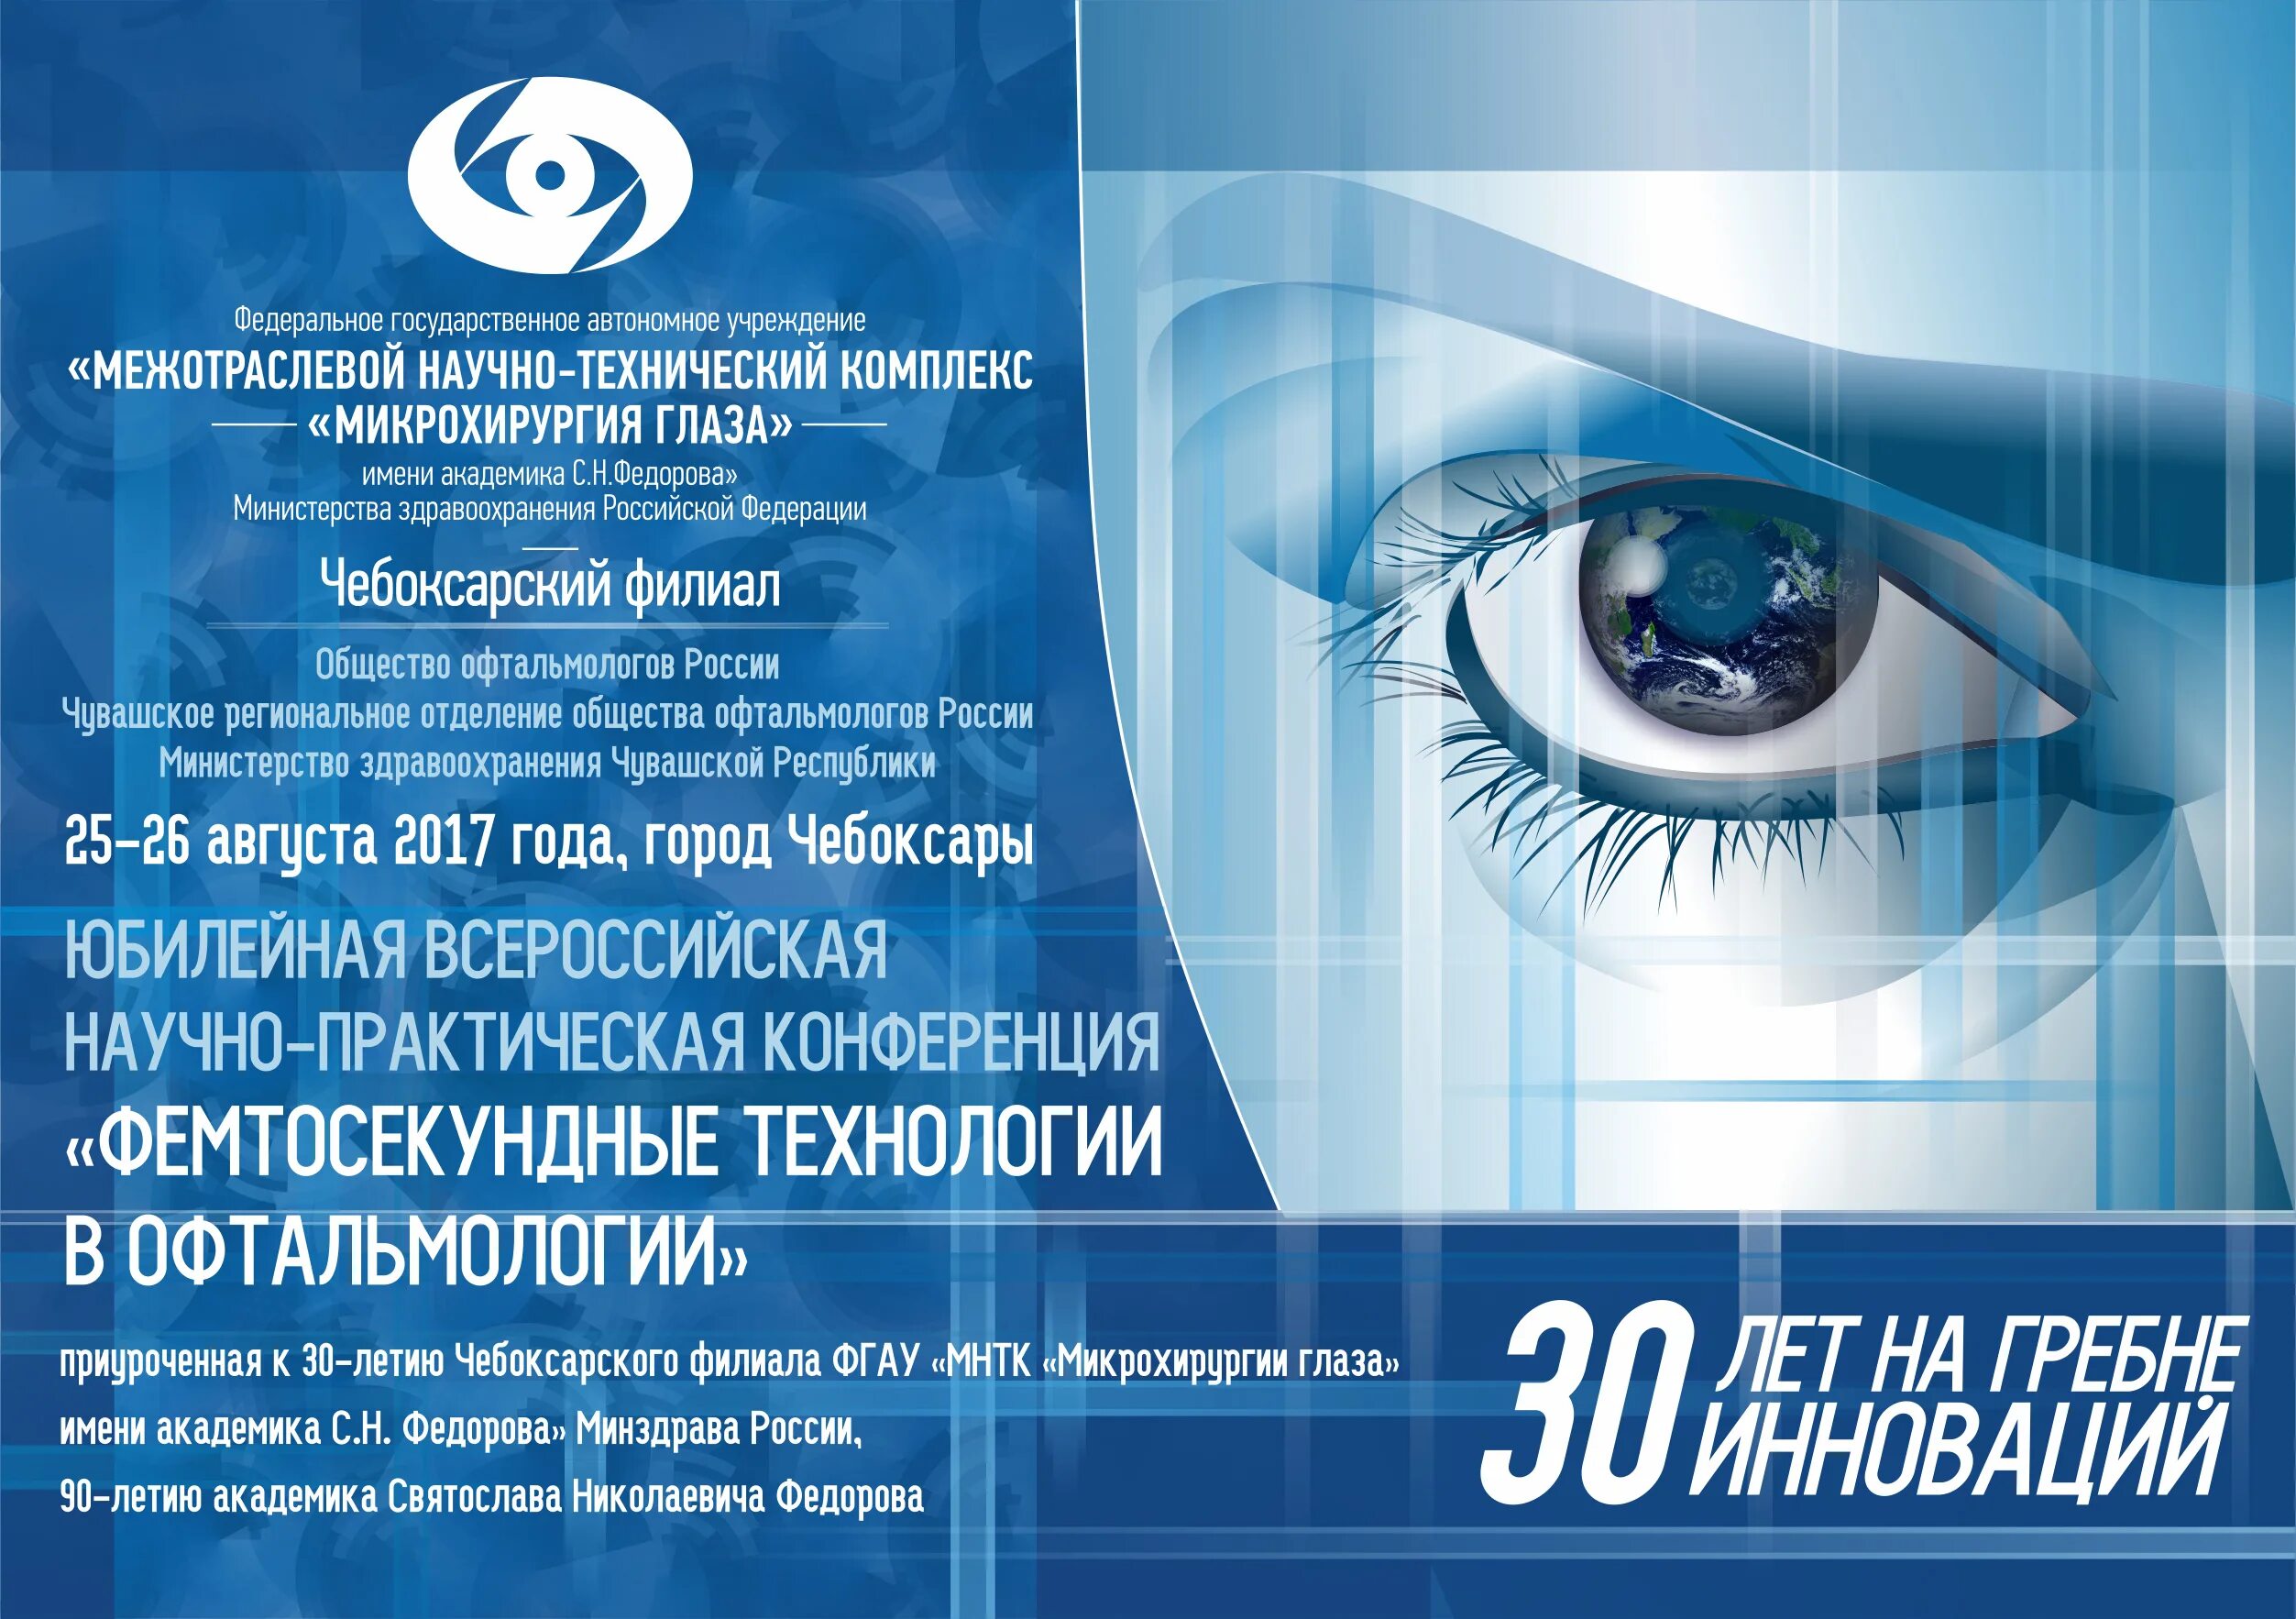 МНТК Микрохирургия глаза. МНТК Микрохирургия глаза реклама. Микрохирургия глаза Оренбург. Глазка новосибирск сайт